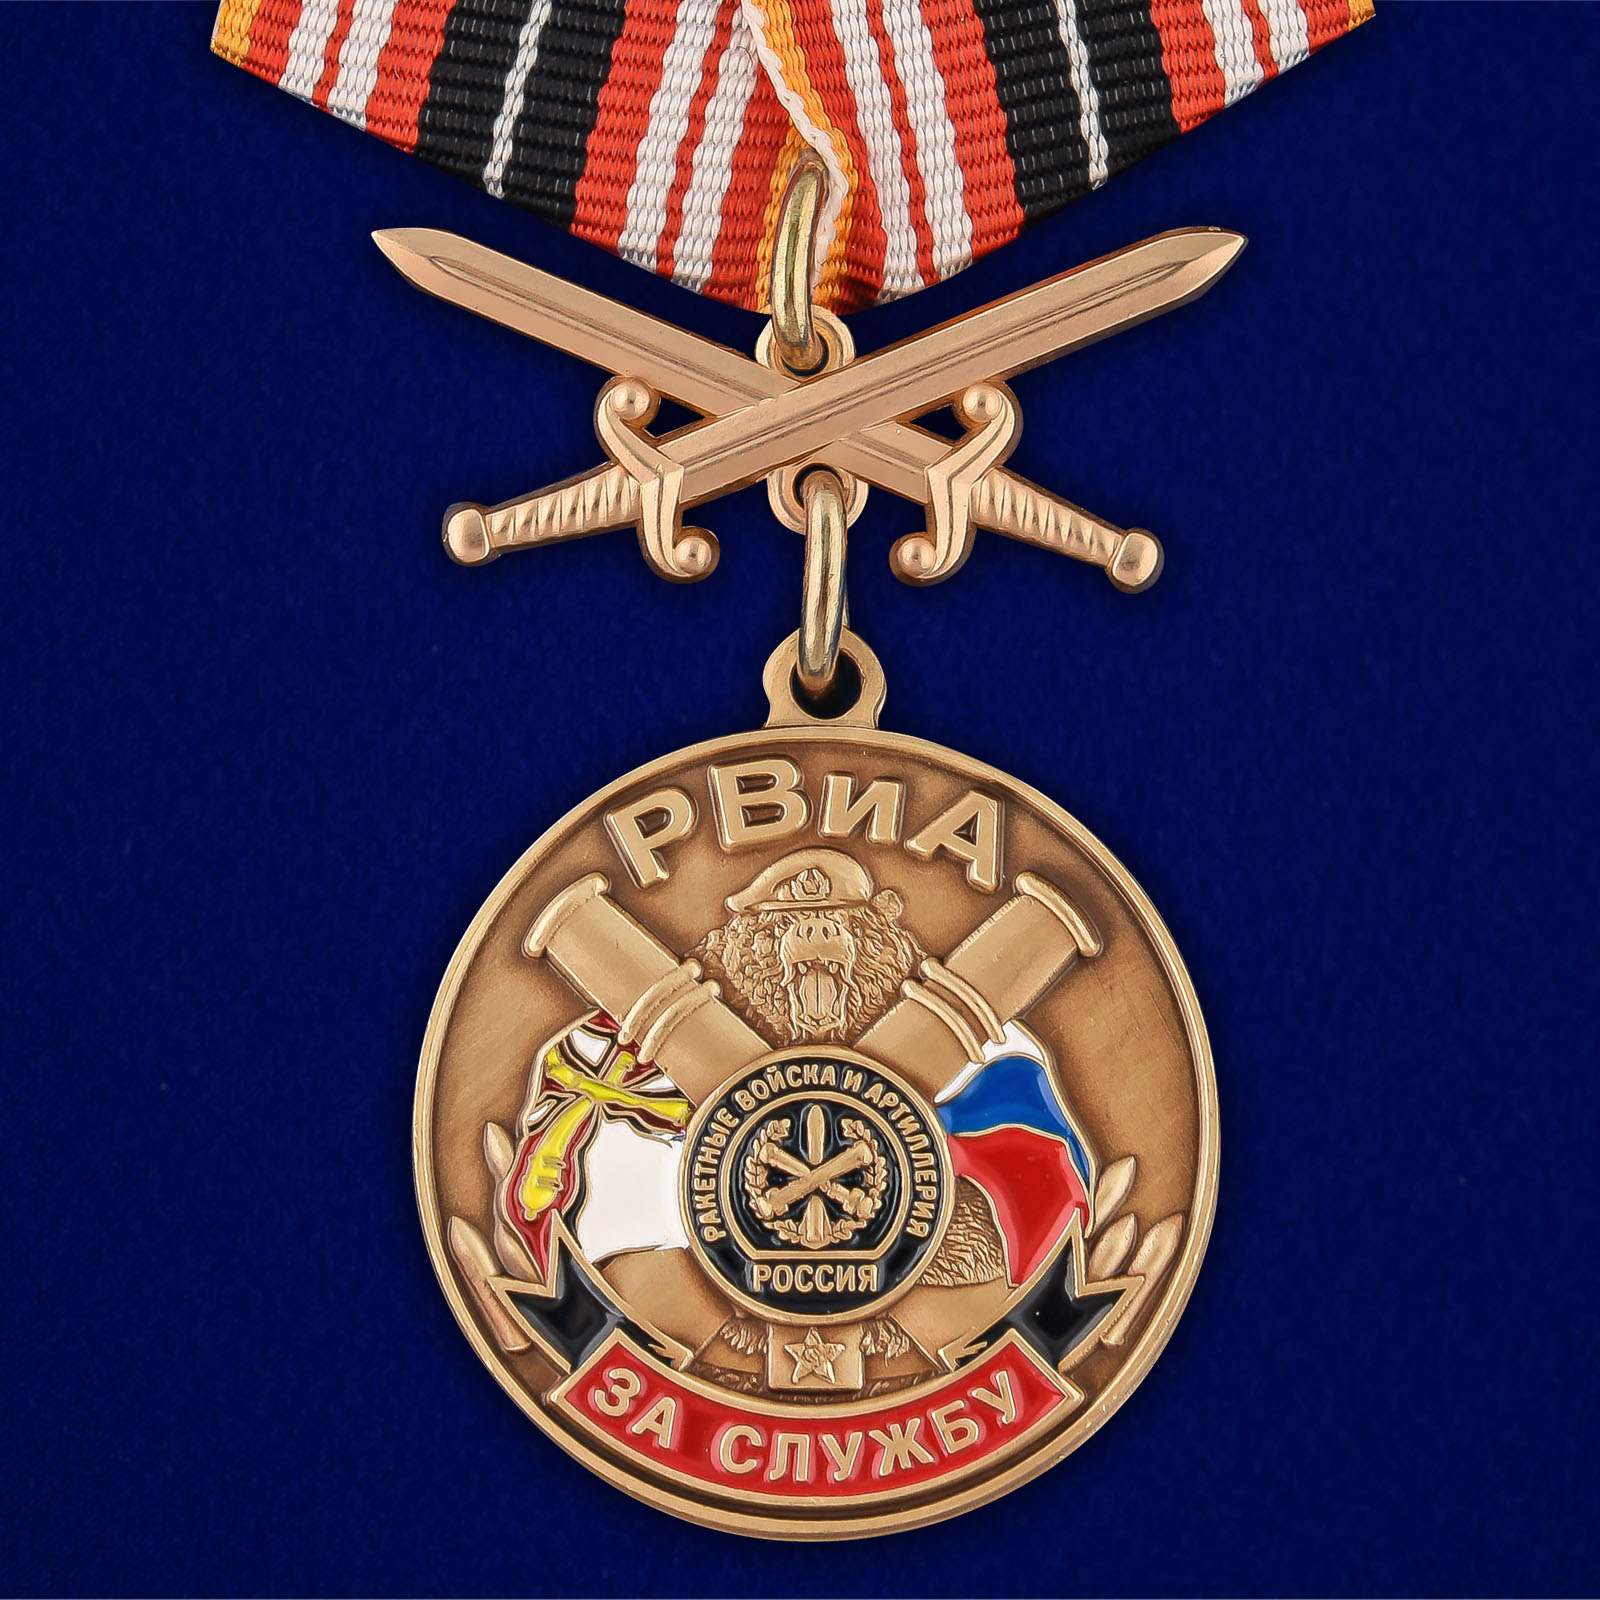 Купить медаль За службу в РВиА онлайн выгодно